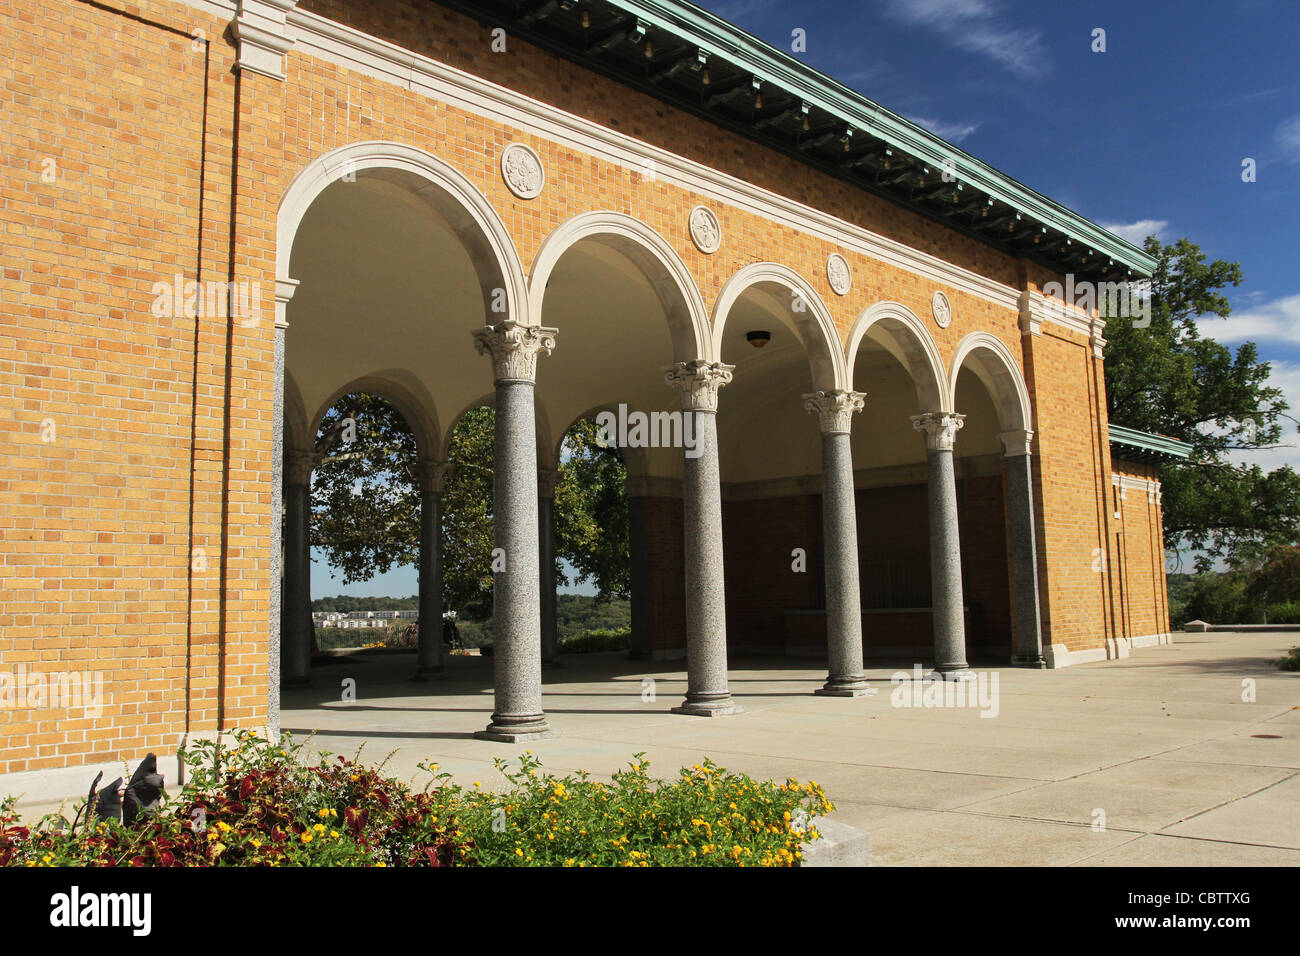 Montare l'Eco Pavilion. Montare Echo Park, Cincinnati, Ohio, Stati Uniti d'America. Italiano di architettura rinascimentale con colonne romane. Foto Stock